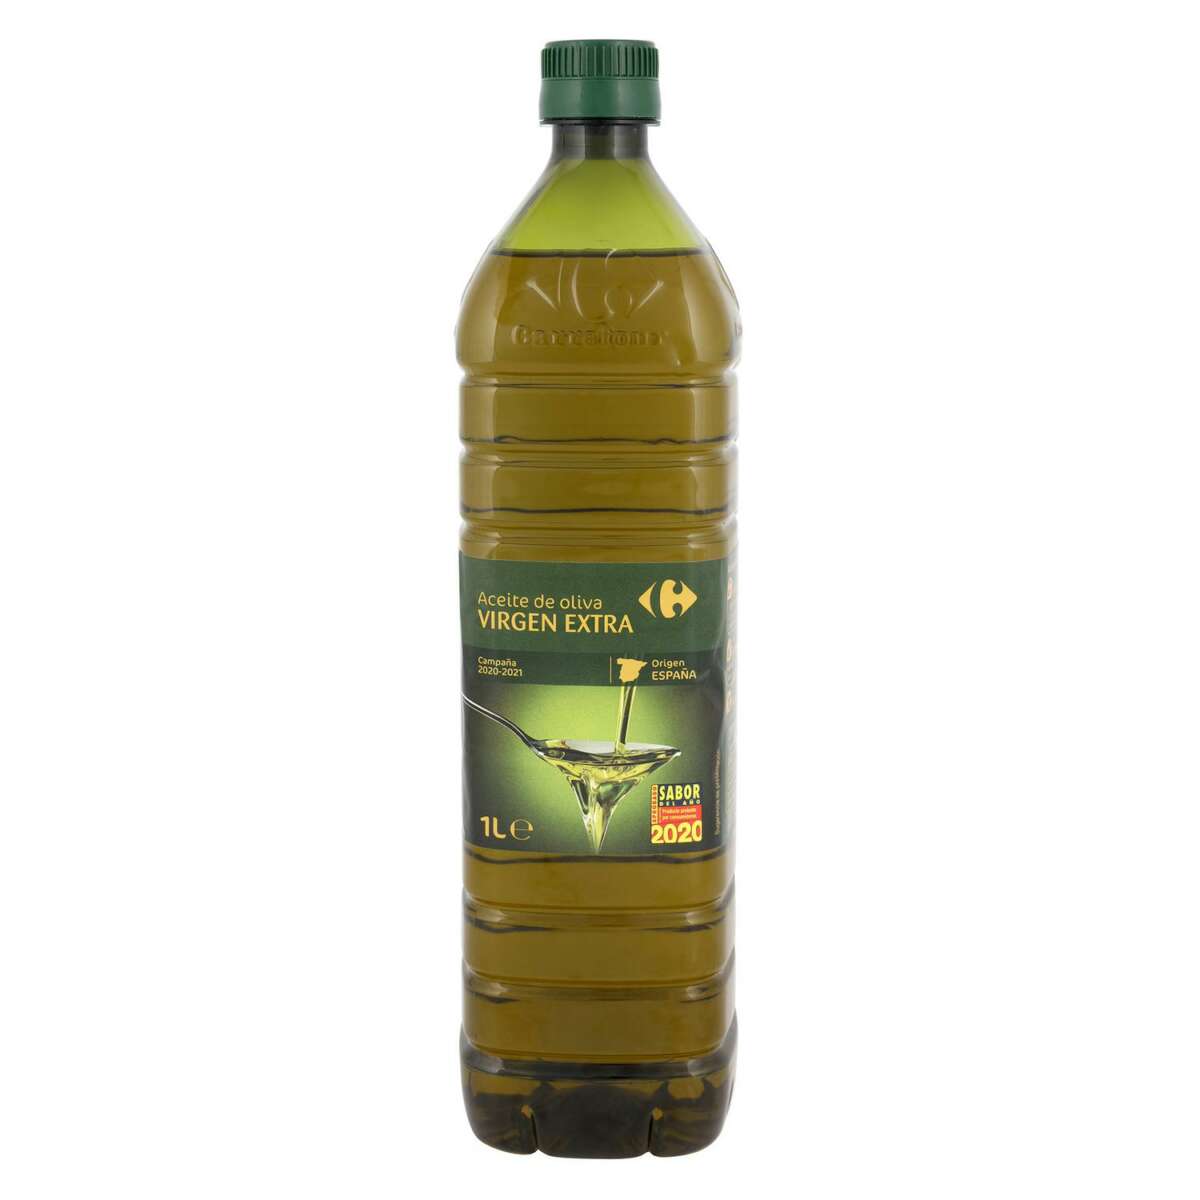 Una botella del aceite de oliva virgen extra de la marca Carrefour